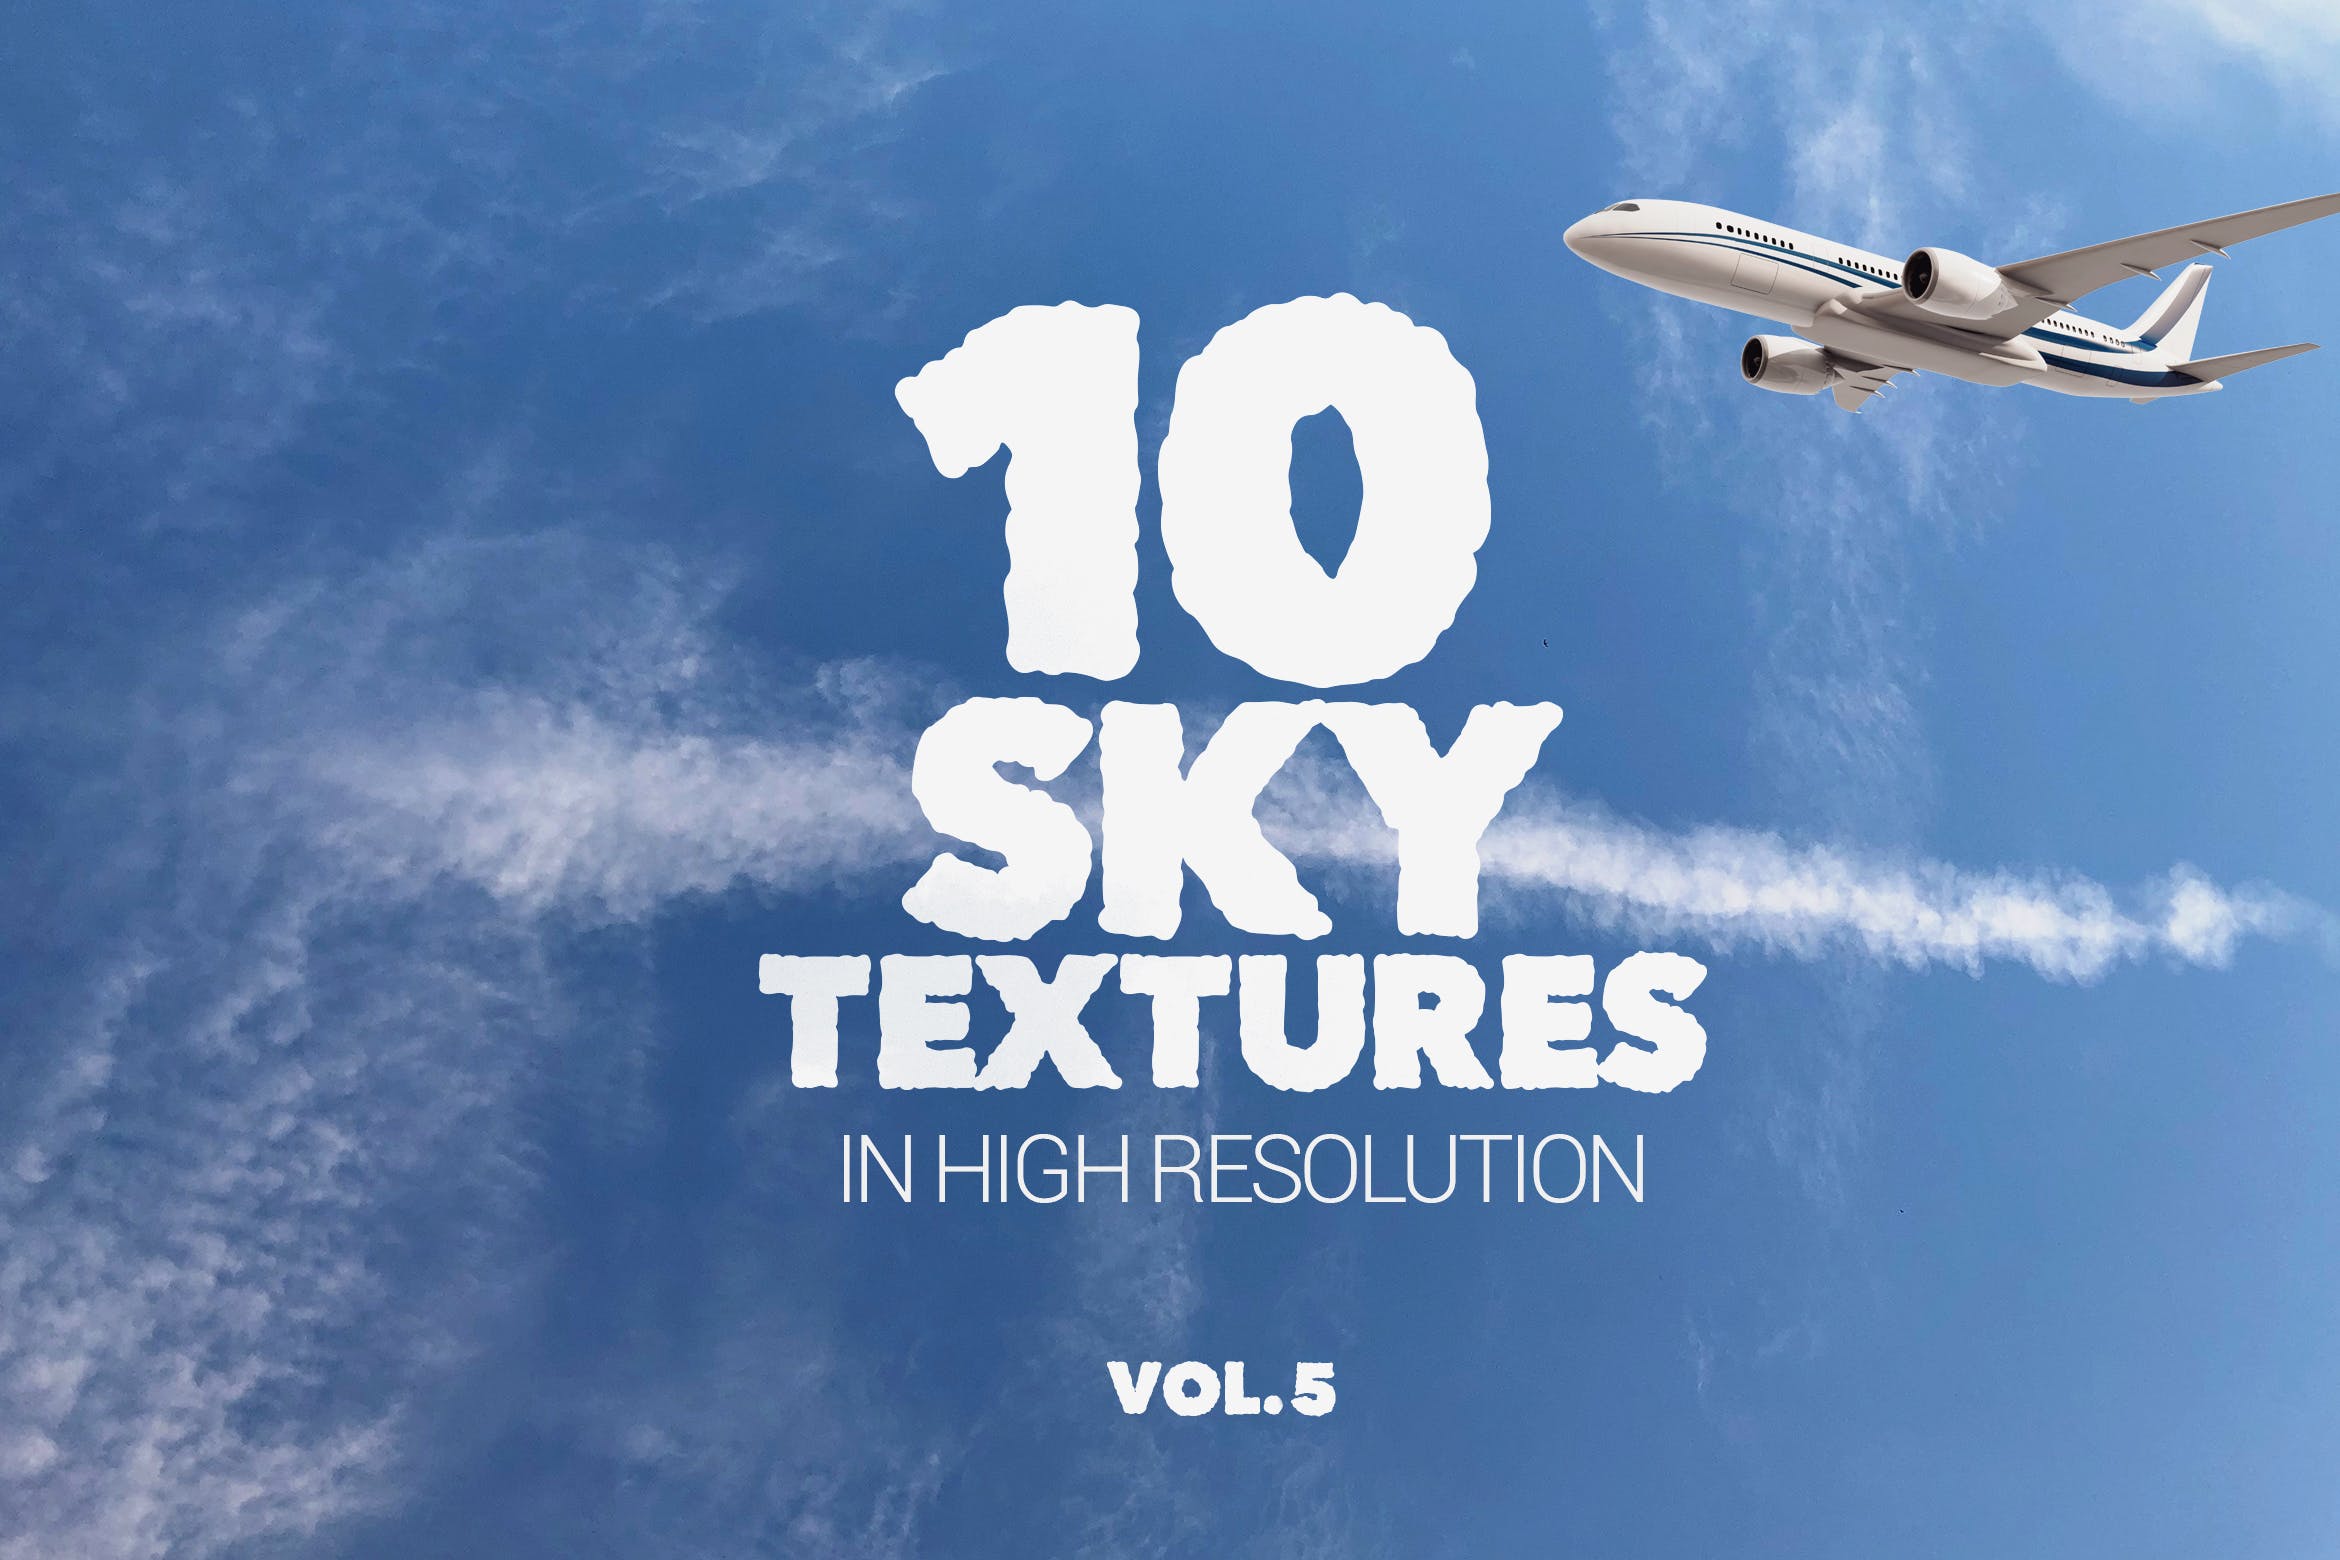 10张蓝天白云天空高清背景图片素材v5 Sky Textures x10 Vol 5插图